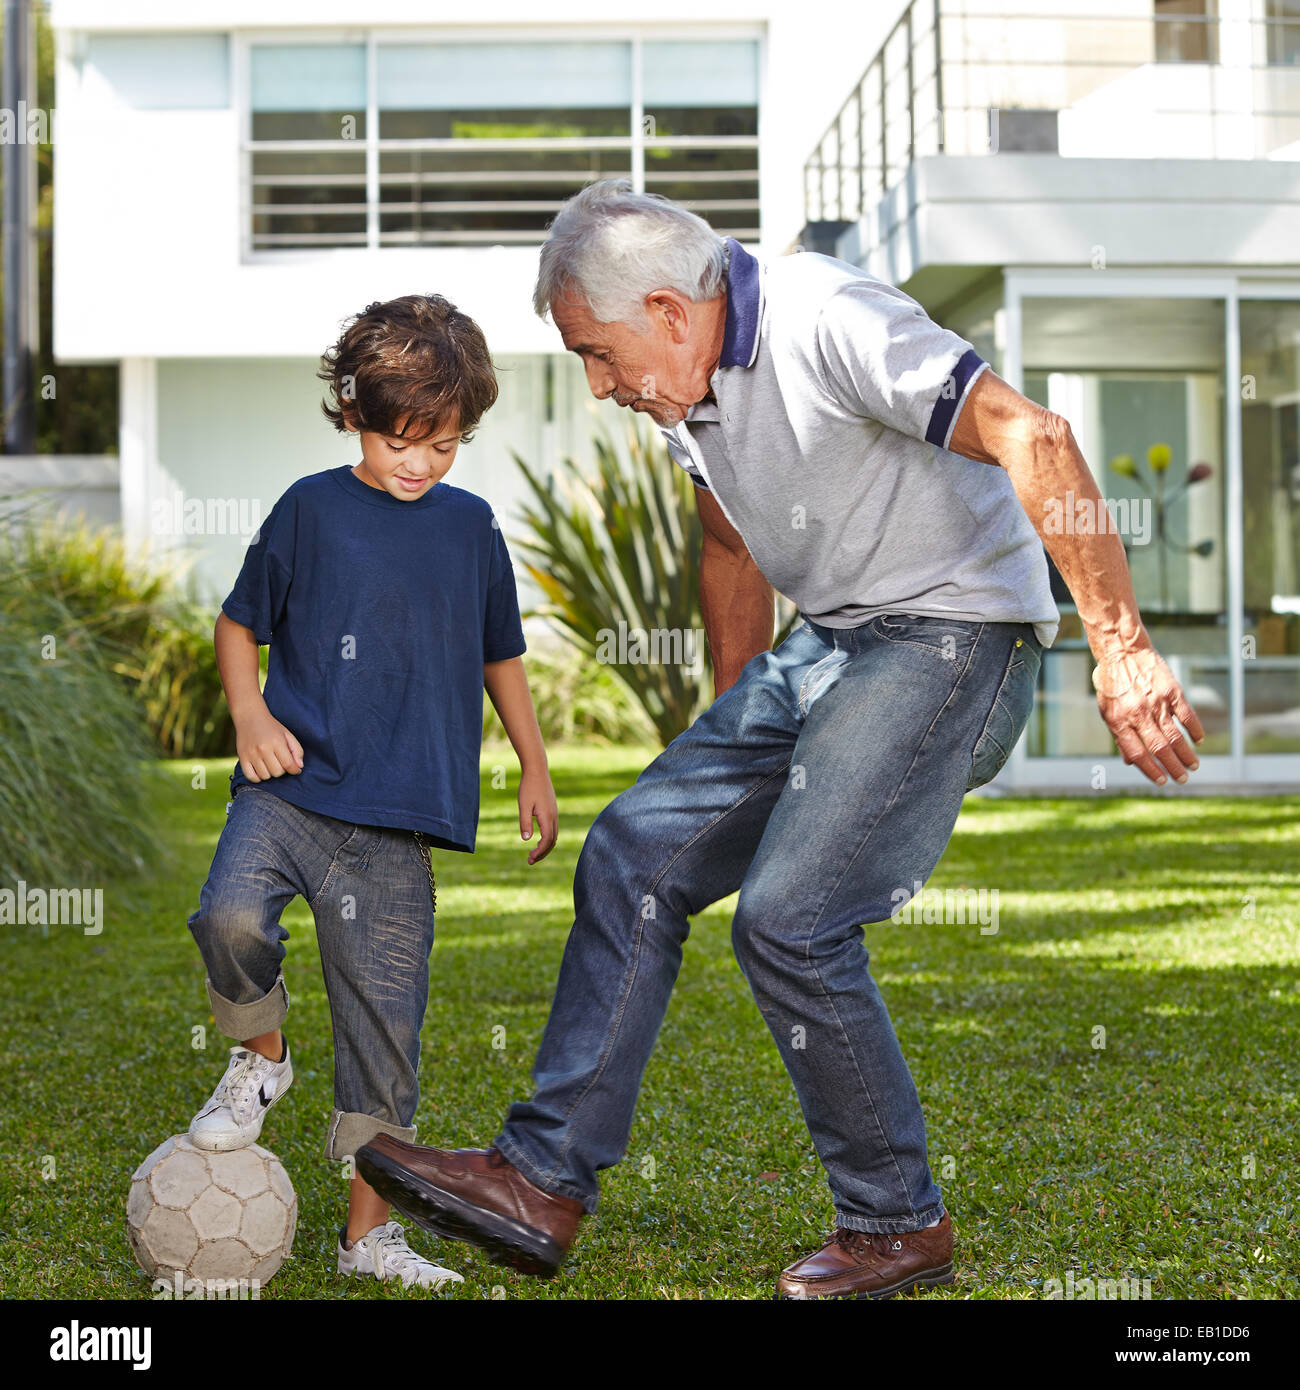 Дедушка играет футбол. Дедушка внук футбол. Старики играют в футбол. Дед играет в футбол с внуками. Мальчик играет с дедом.